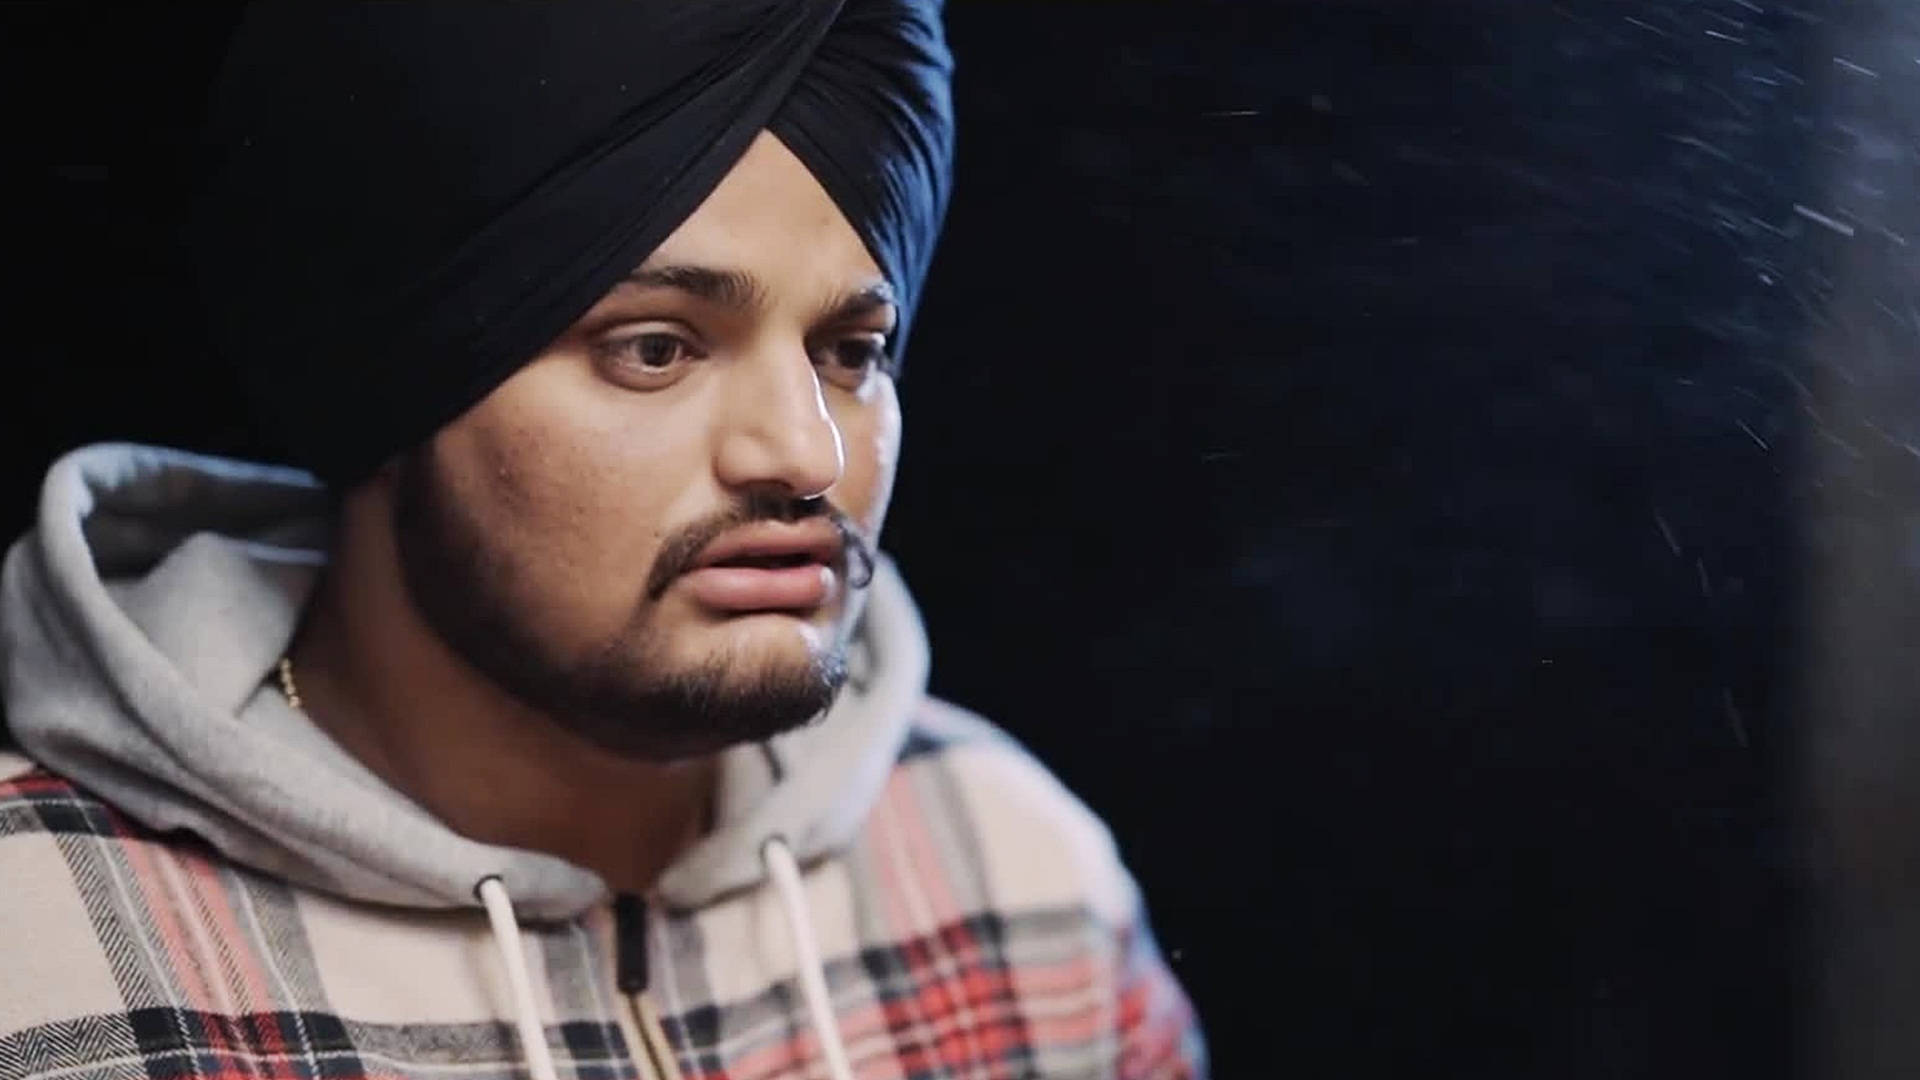 Sidhu Moose Wala Canada-based Punjab Singer Background